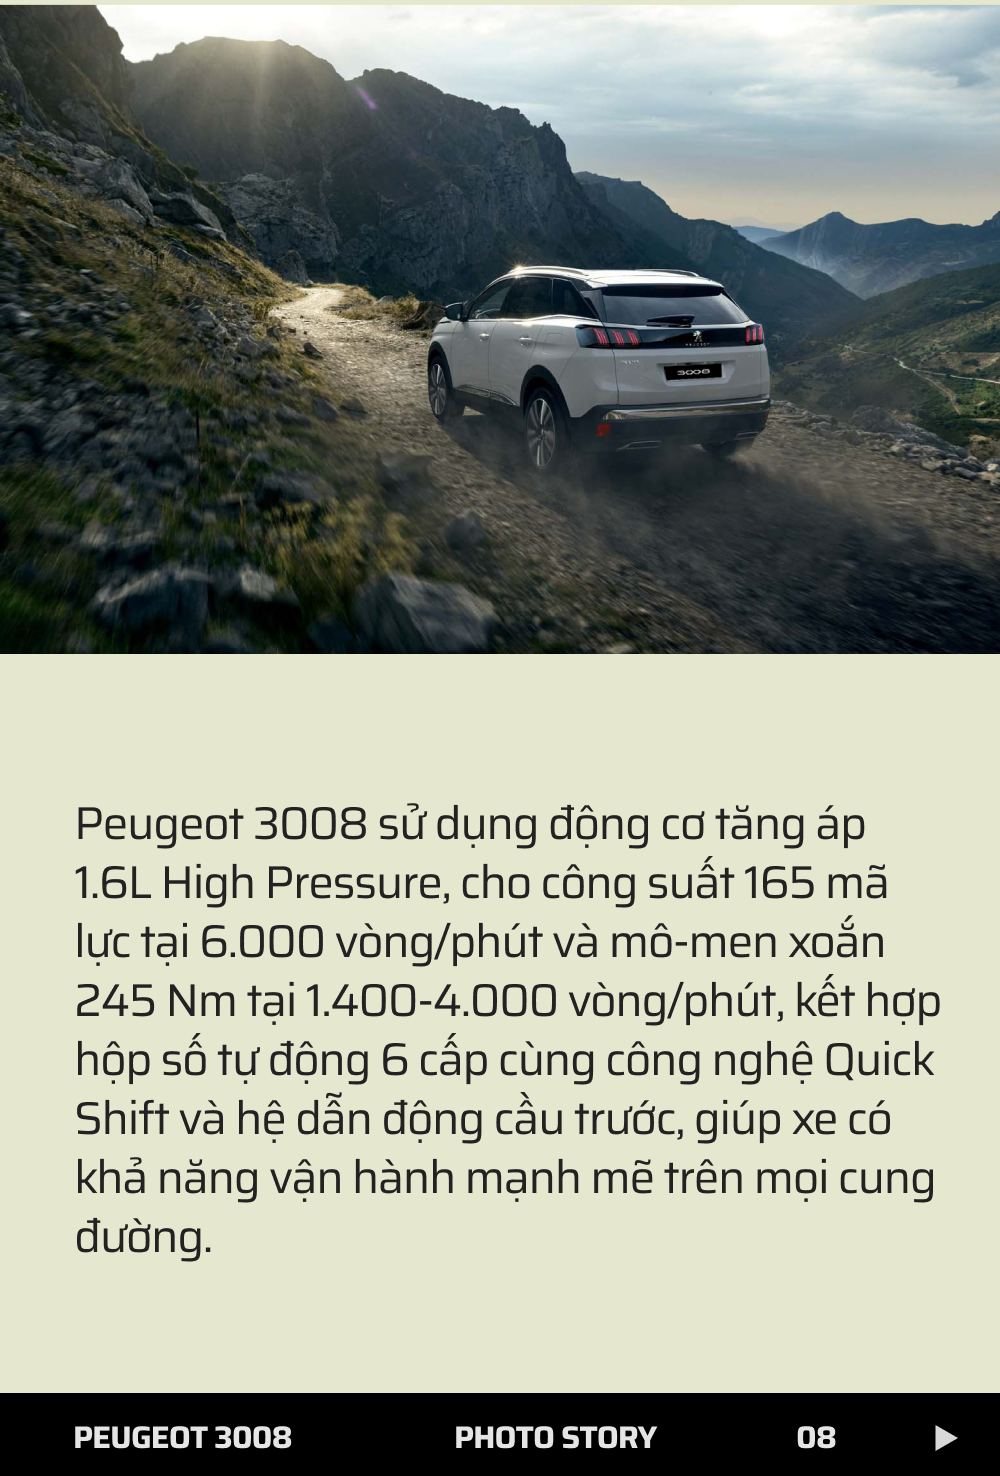 Peugeot 3008 - mẫu SUV châu Âu lý tưởng đáp ứng đa dạng nhu cầu của khách hàng - Ảnh 8.